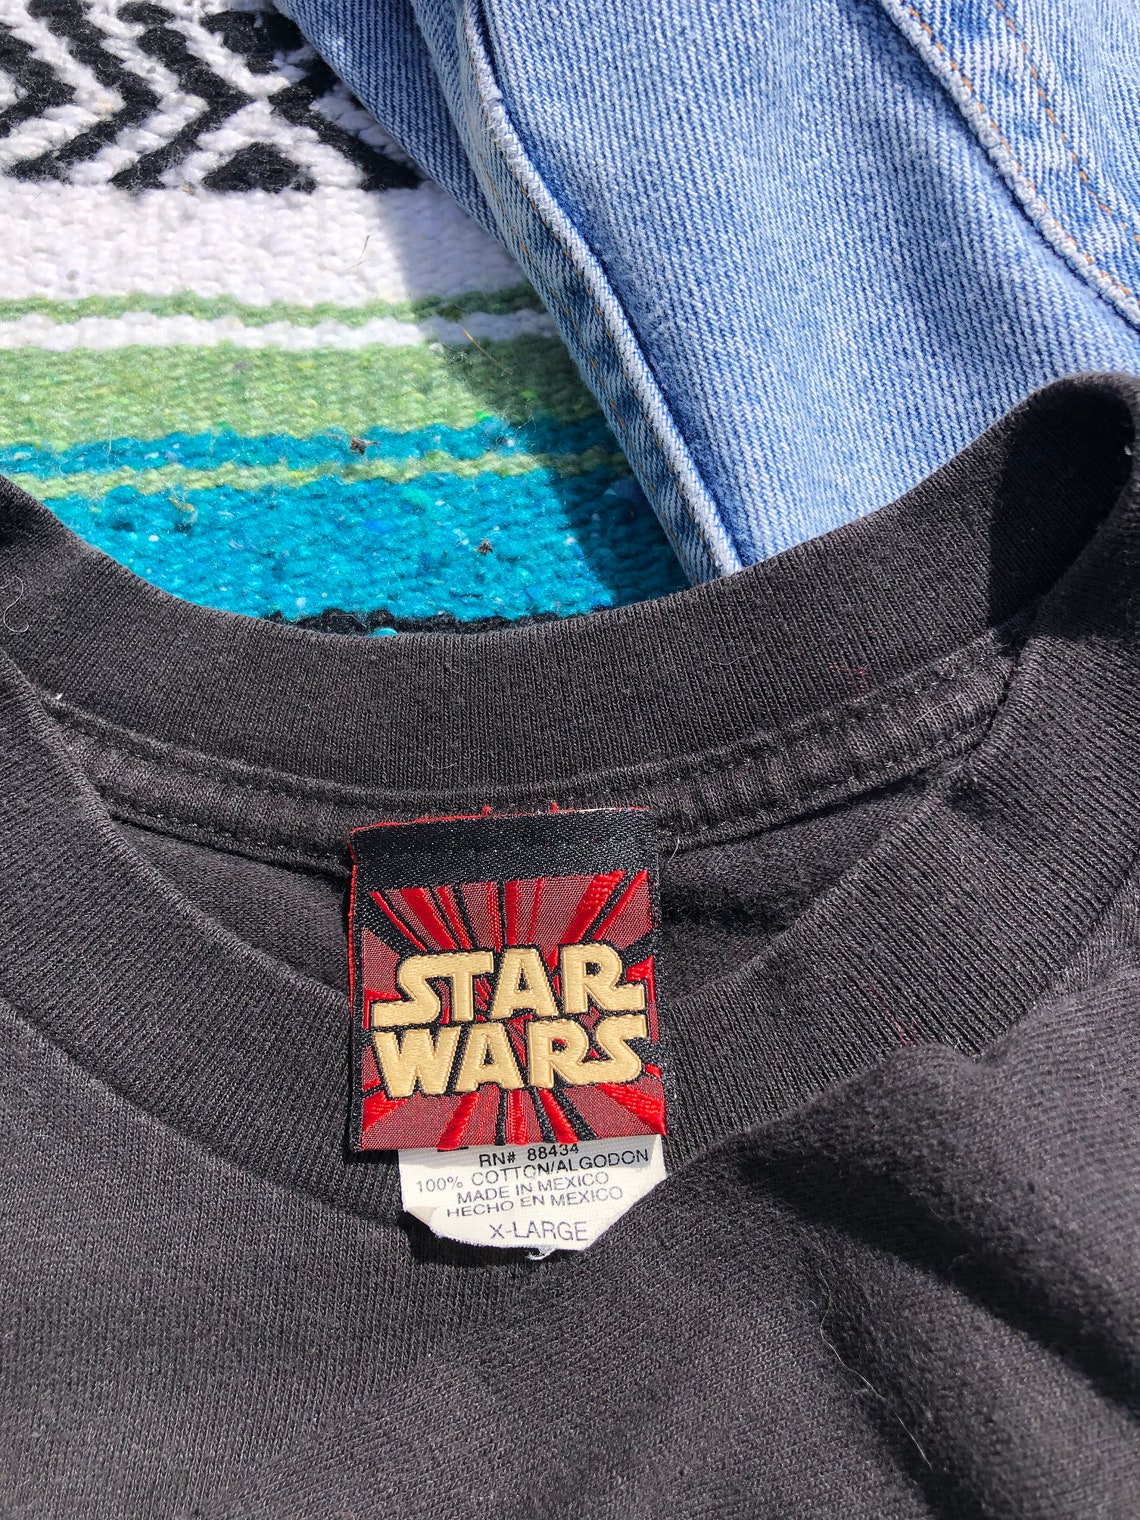 Vintage 1999 Star Wars Anakin Skywalker Graphic T-shirt Jedi | Etsy